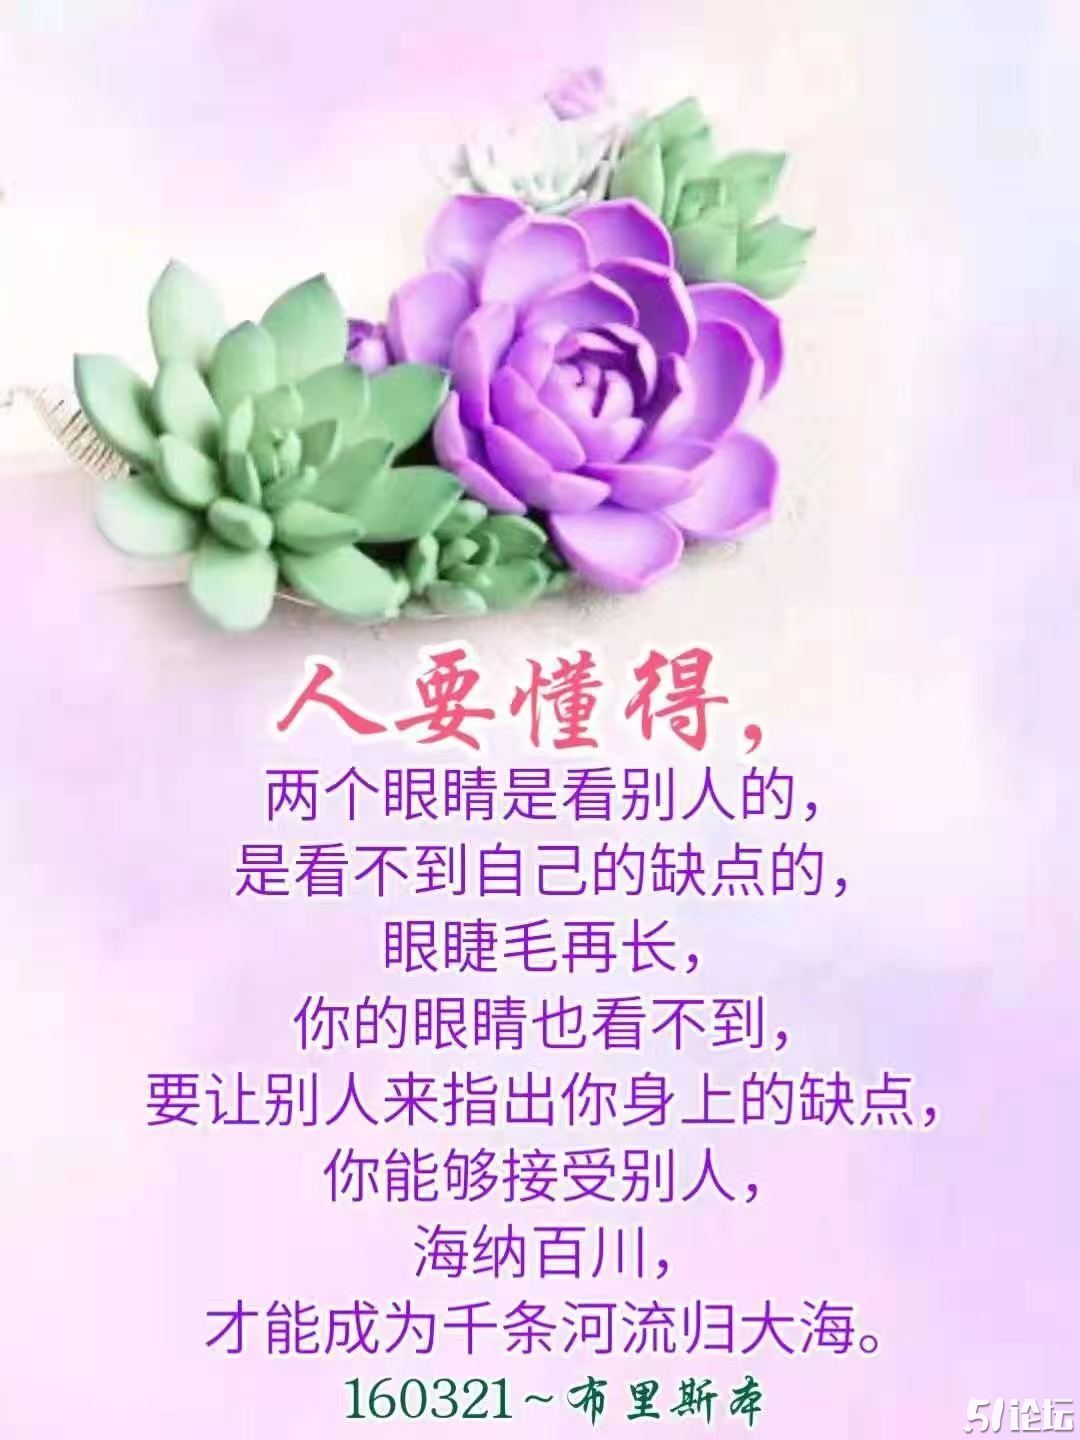 WeChat Image_20210717201658.jpg